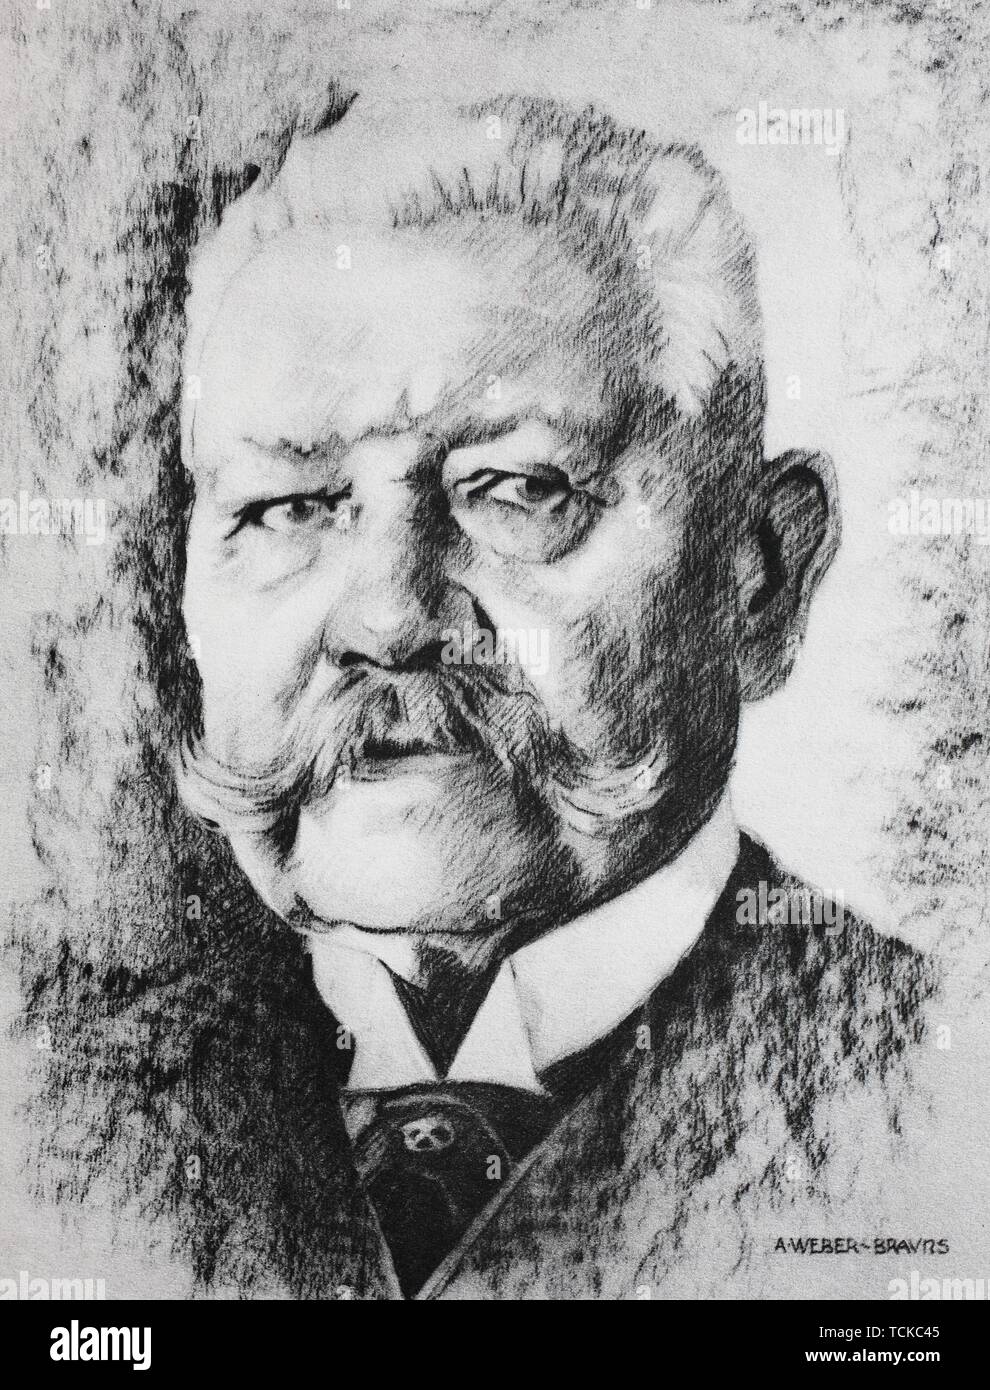 Paul Ludwig Hans Anton von Beneckendorff und von Hindenburg, 1847-1934, was a Generalfeldmarschall, Field Marshal and statesman, 1880, historical Stock Photo